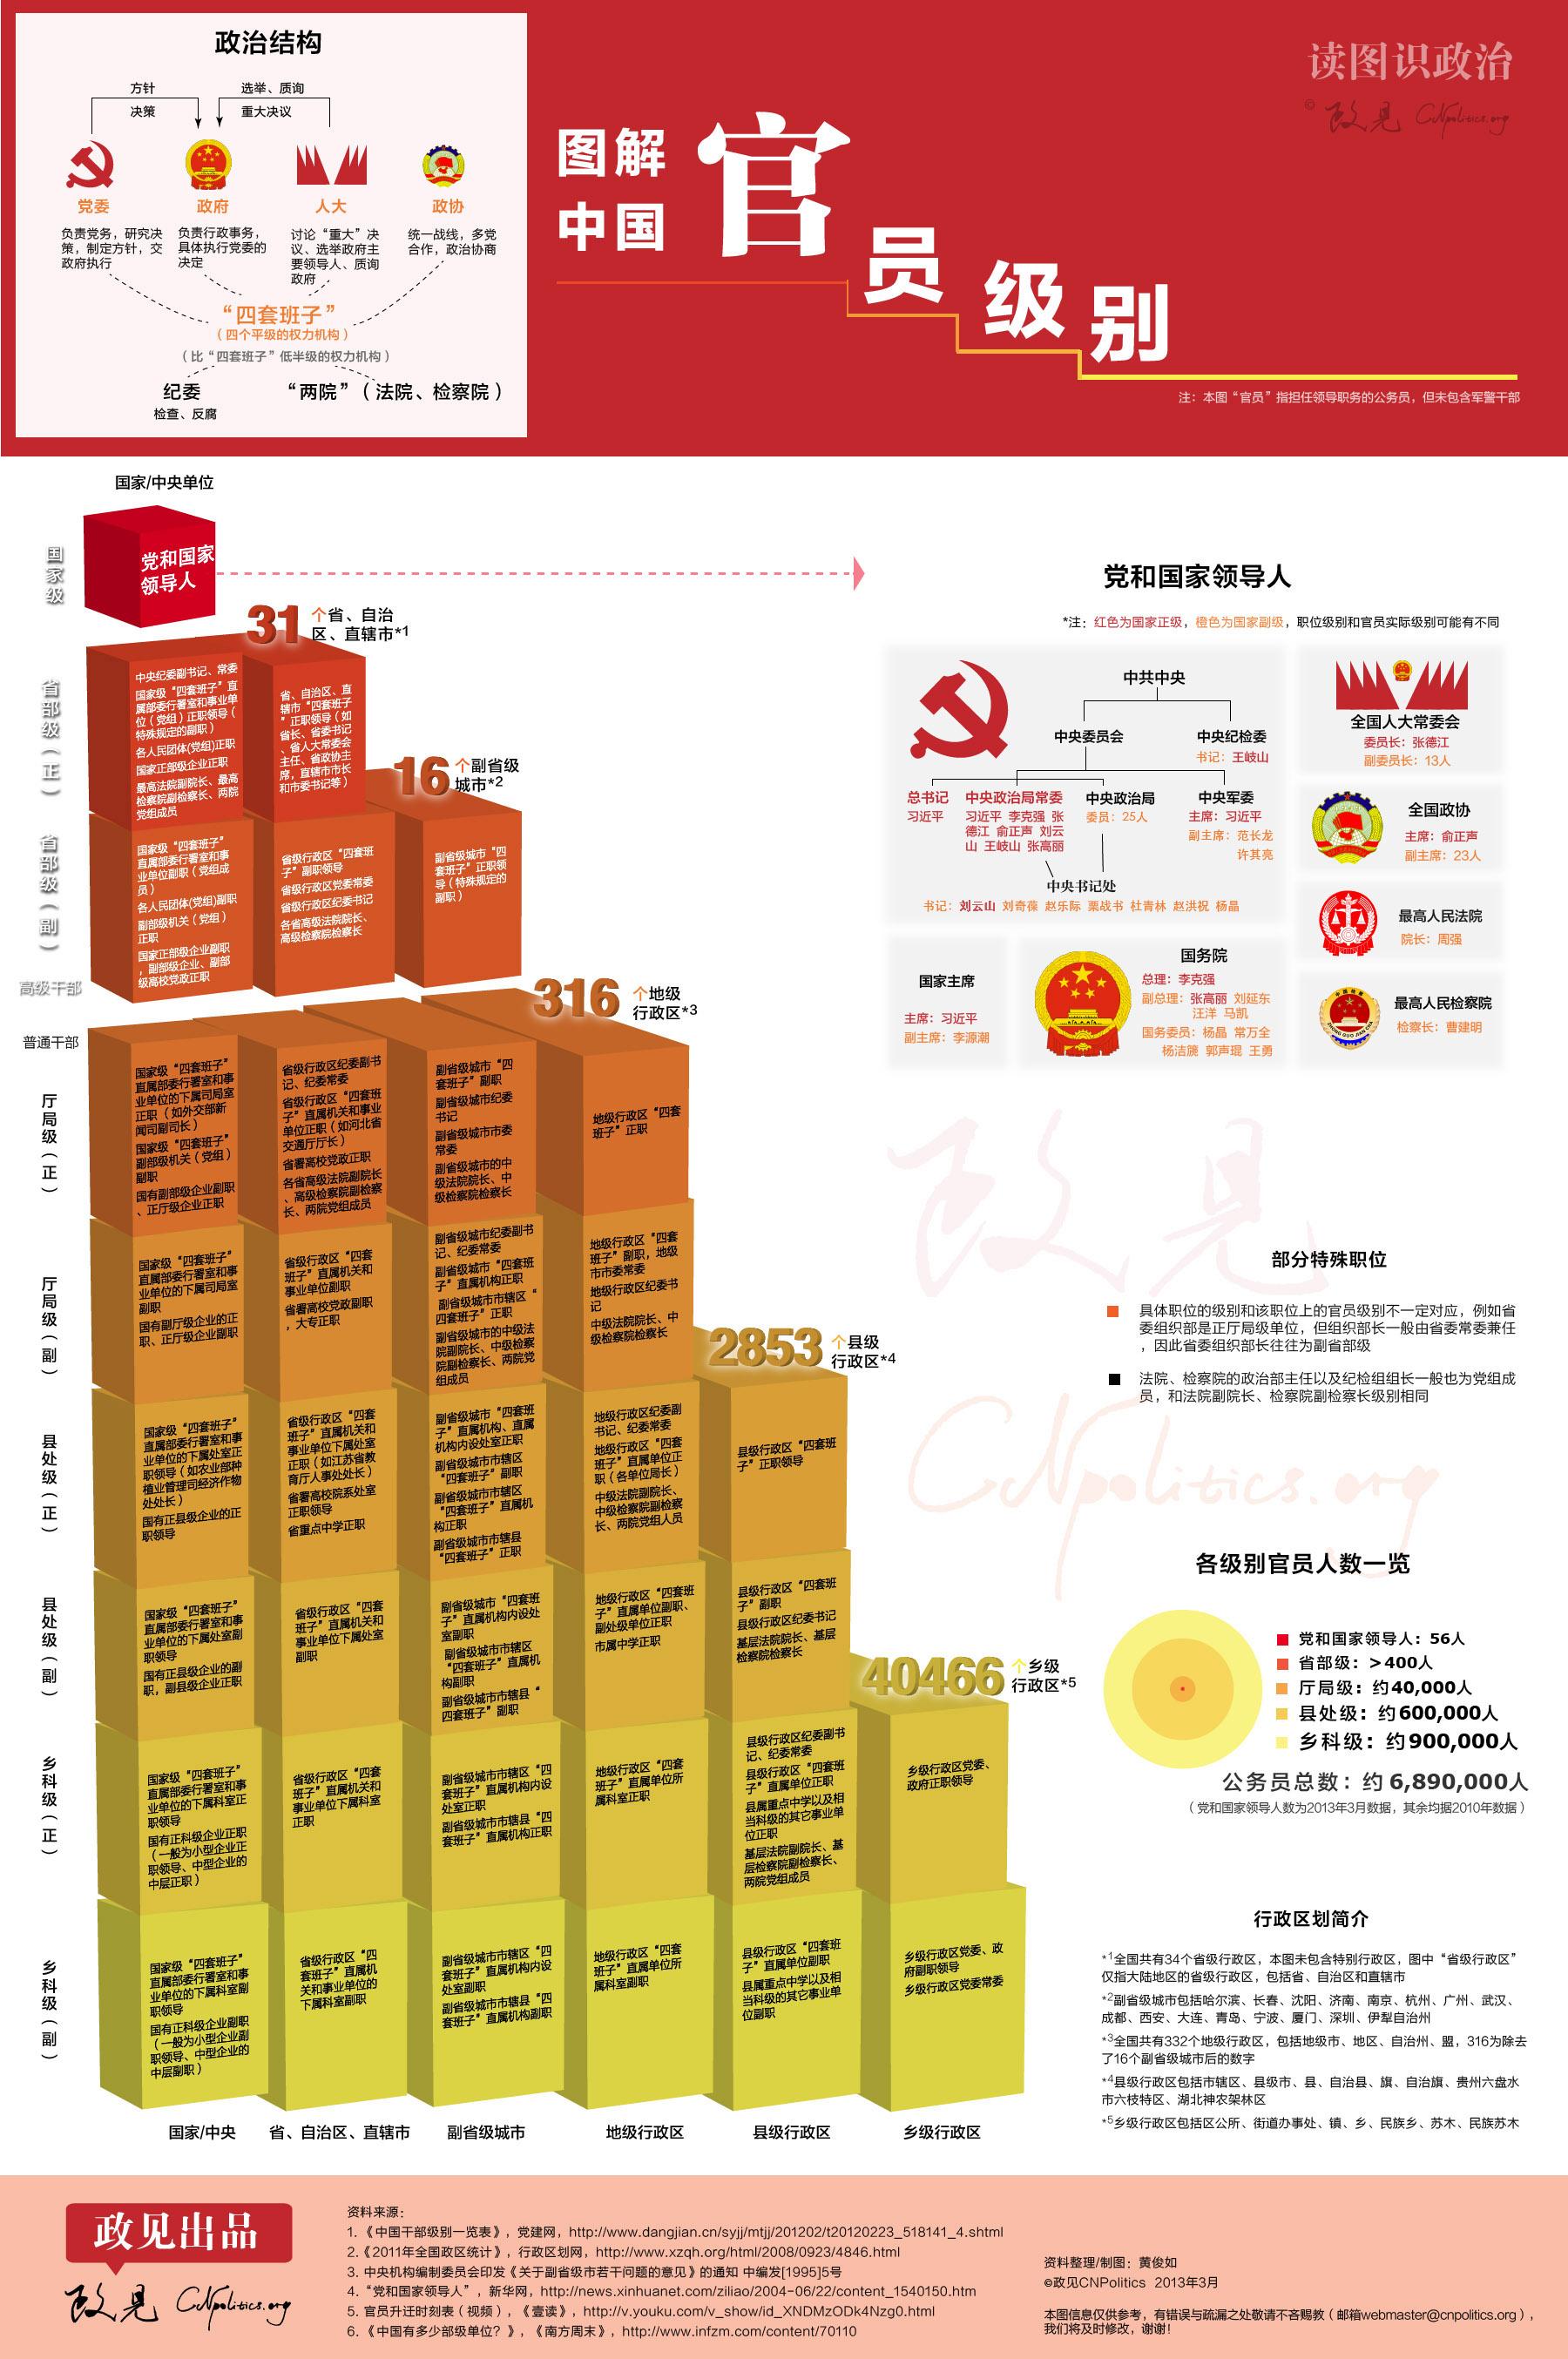 中国干部级别架构图图片